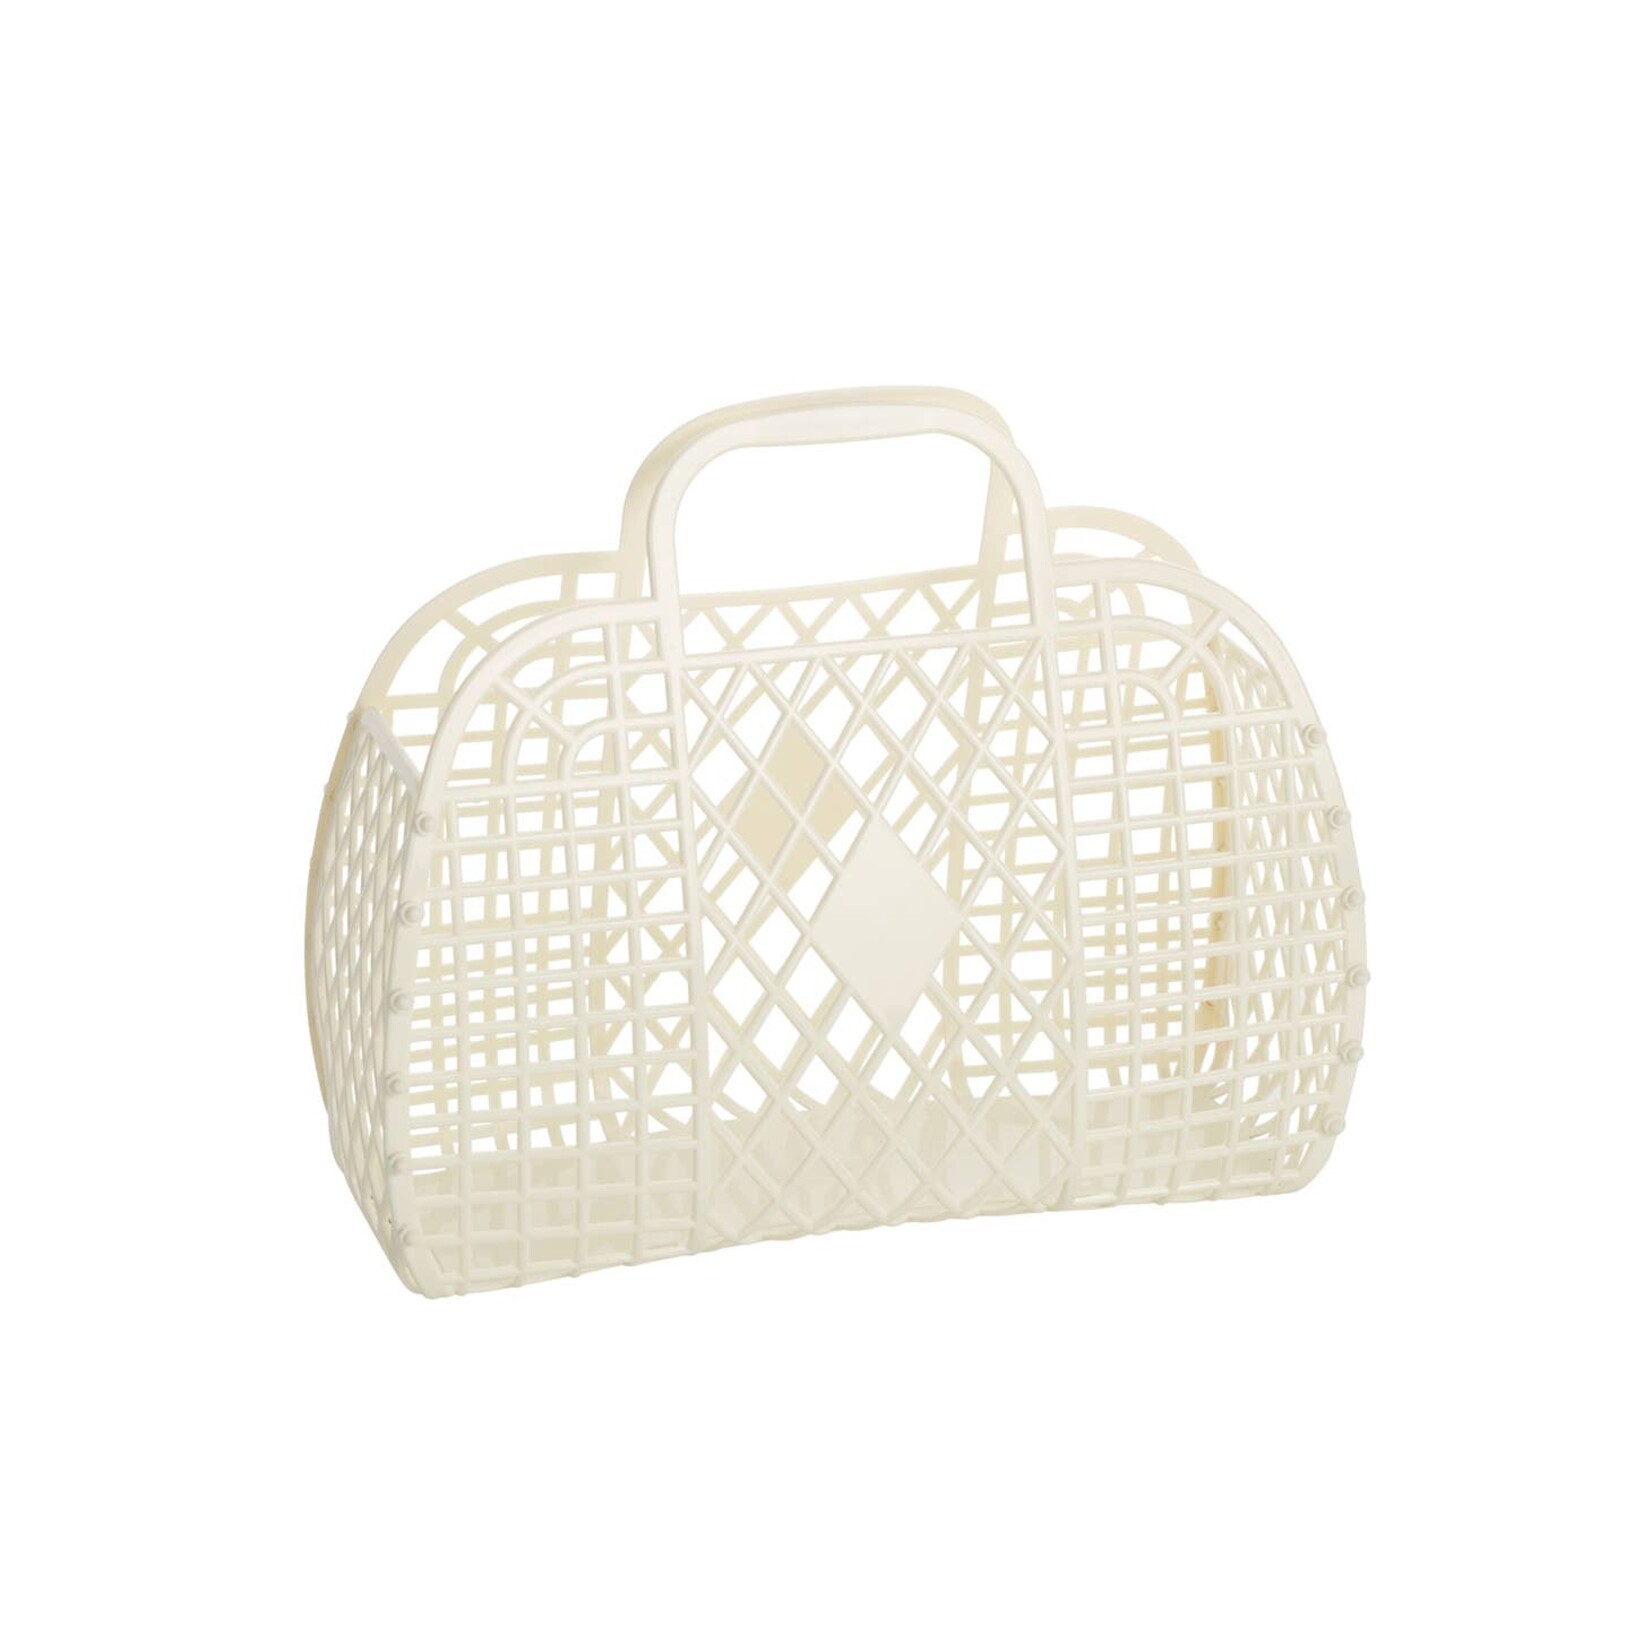 sun jellies small retro basket